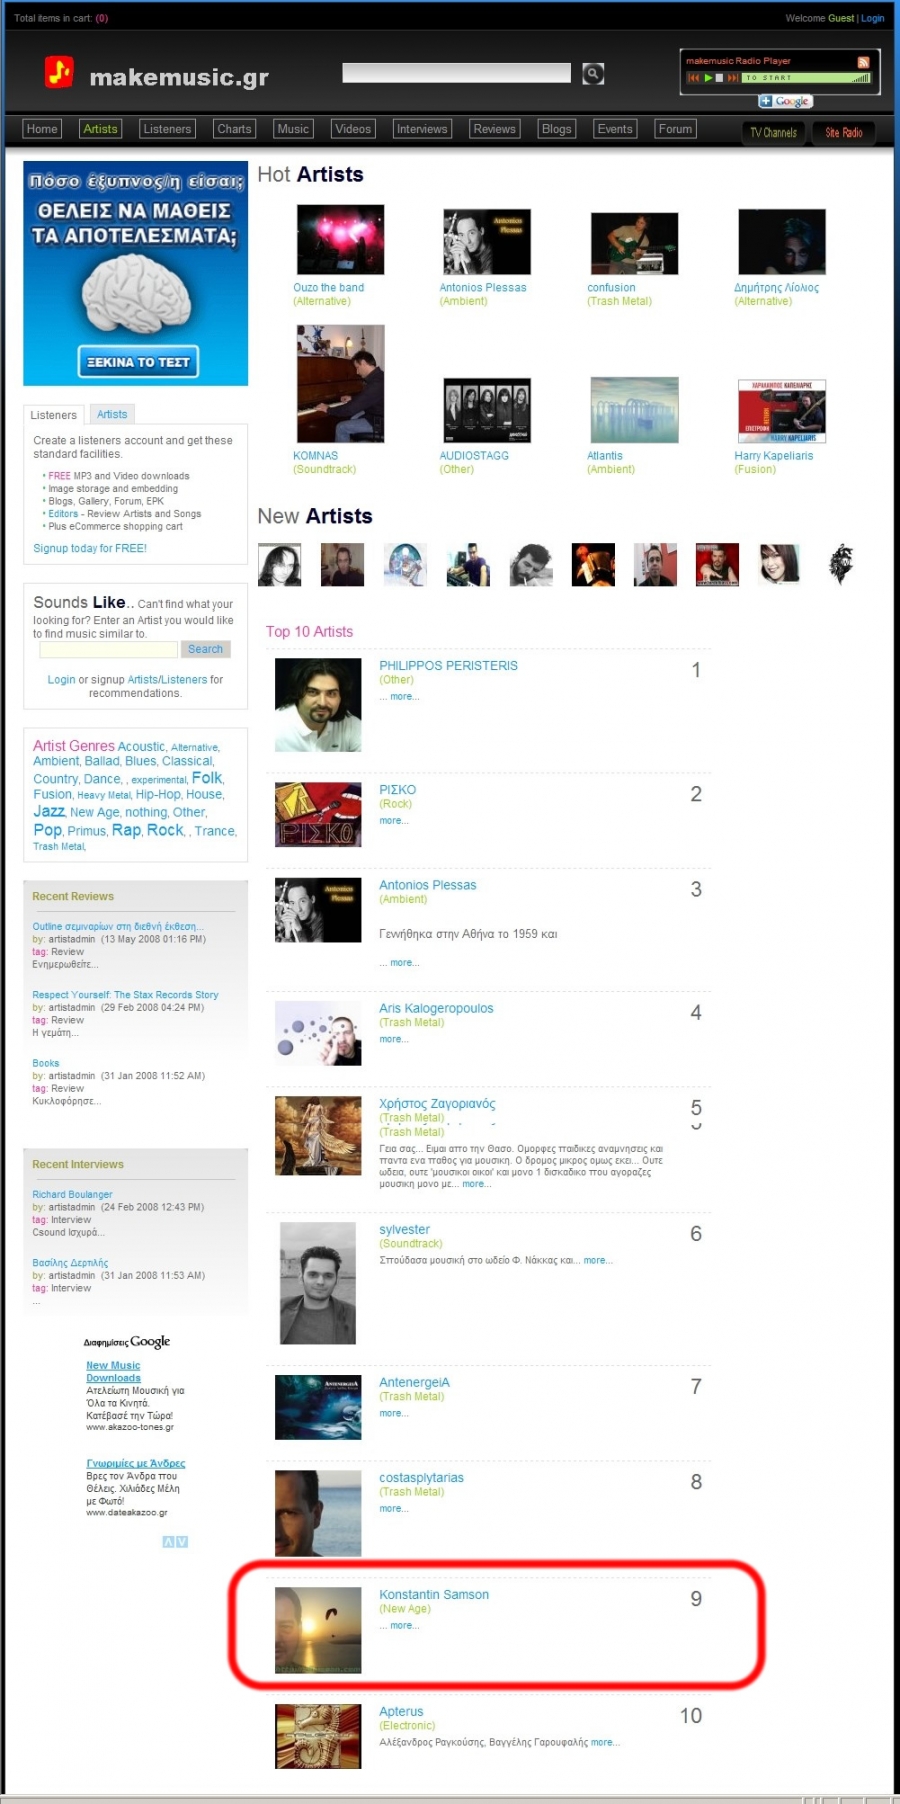 Νοέμβριος 2008 - Ο Κωνσταντίνος Σαμψών στο TOP-10 του Site MakeMusic.gr